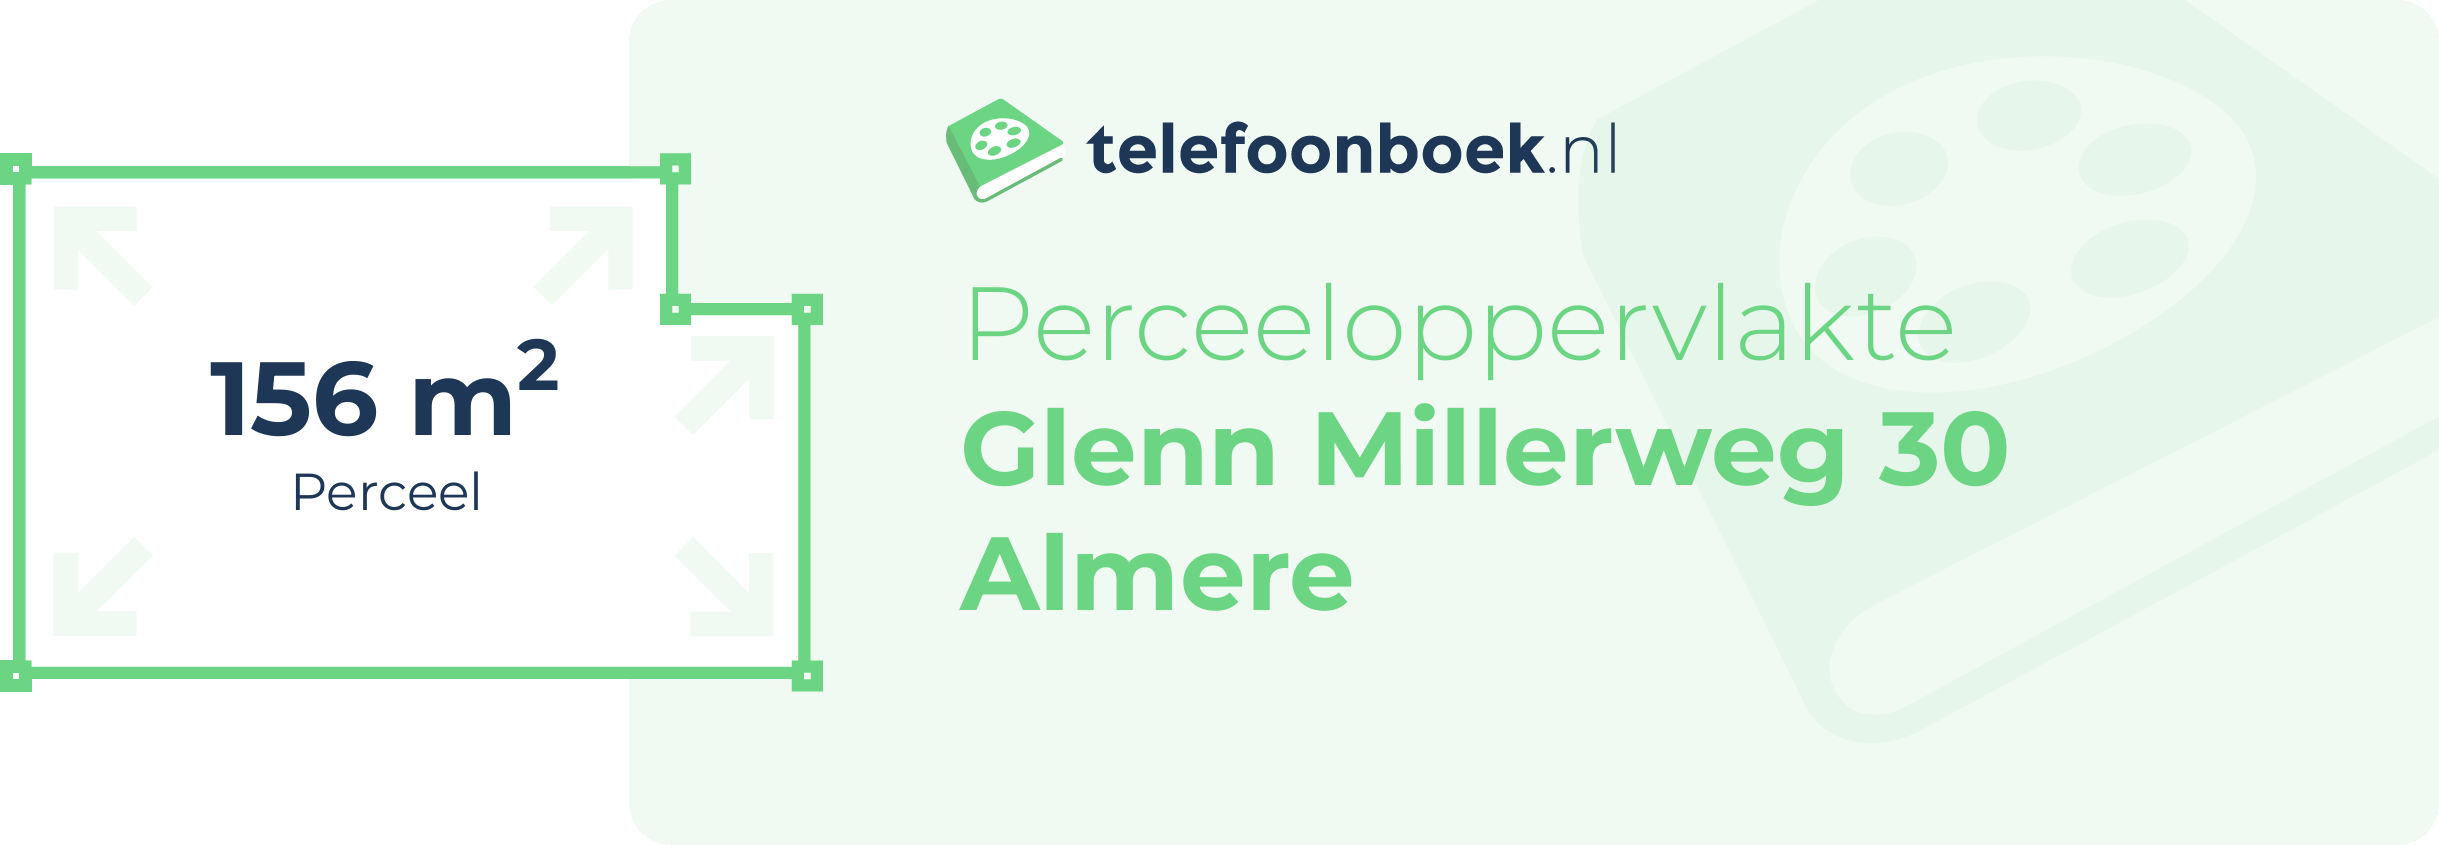 Perceeloppervlakte Glenn Millerweg 30 Almere